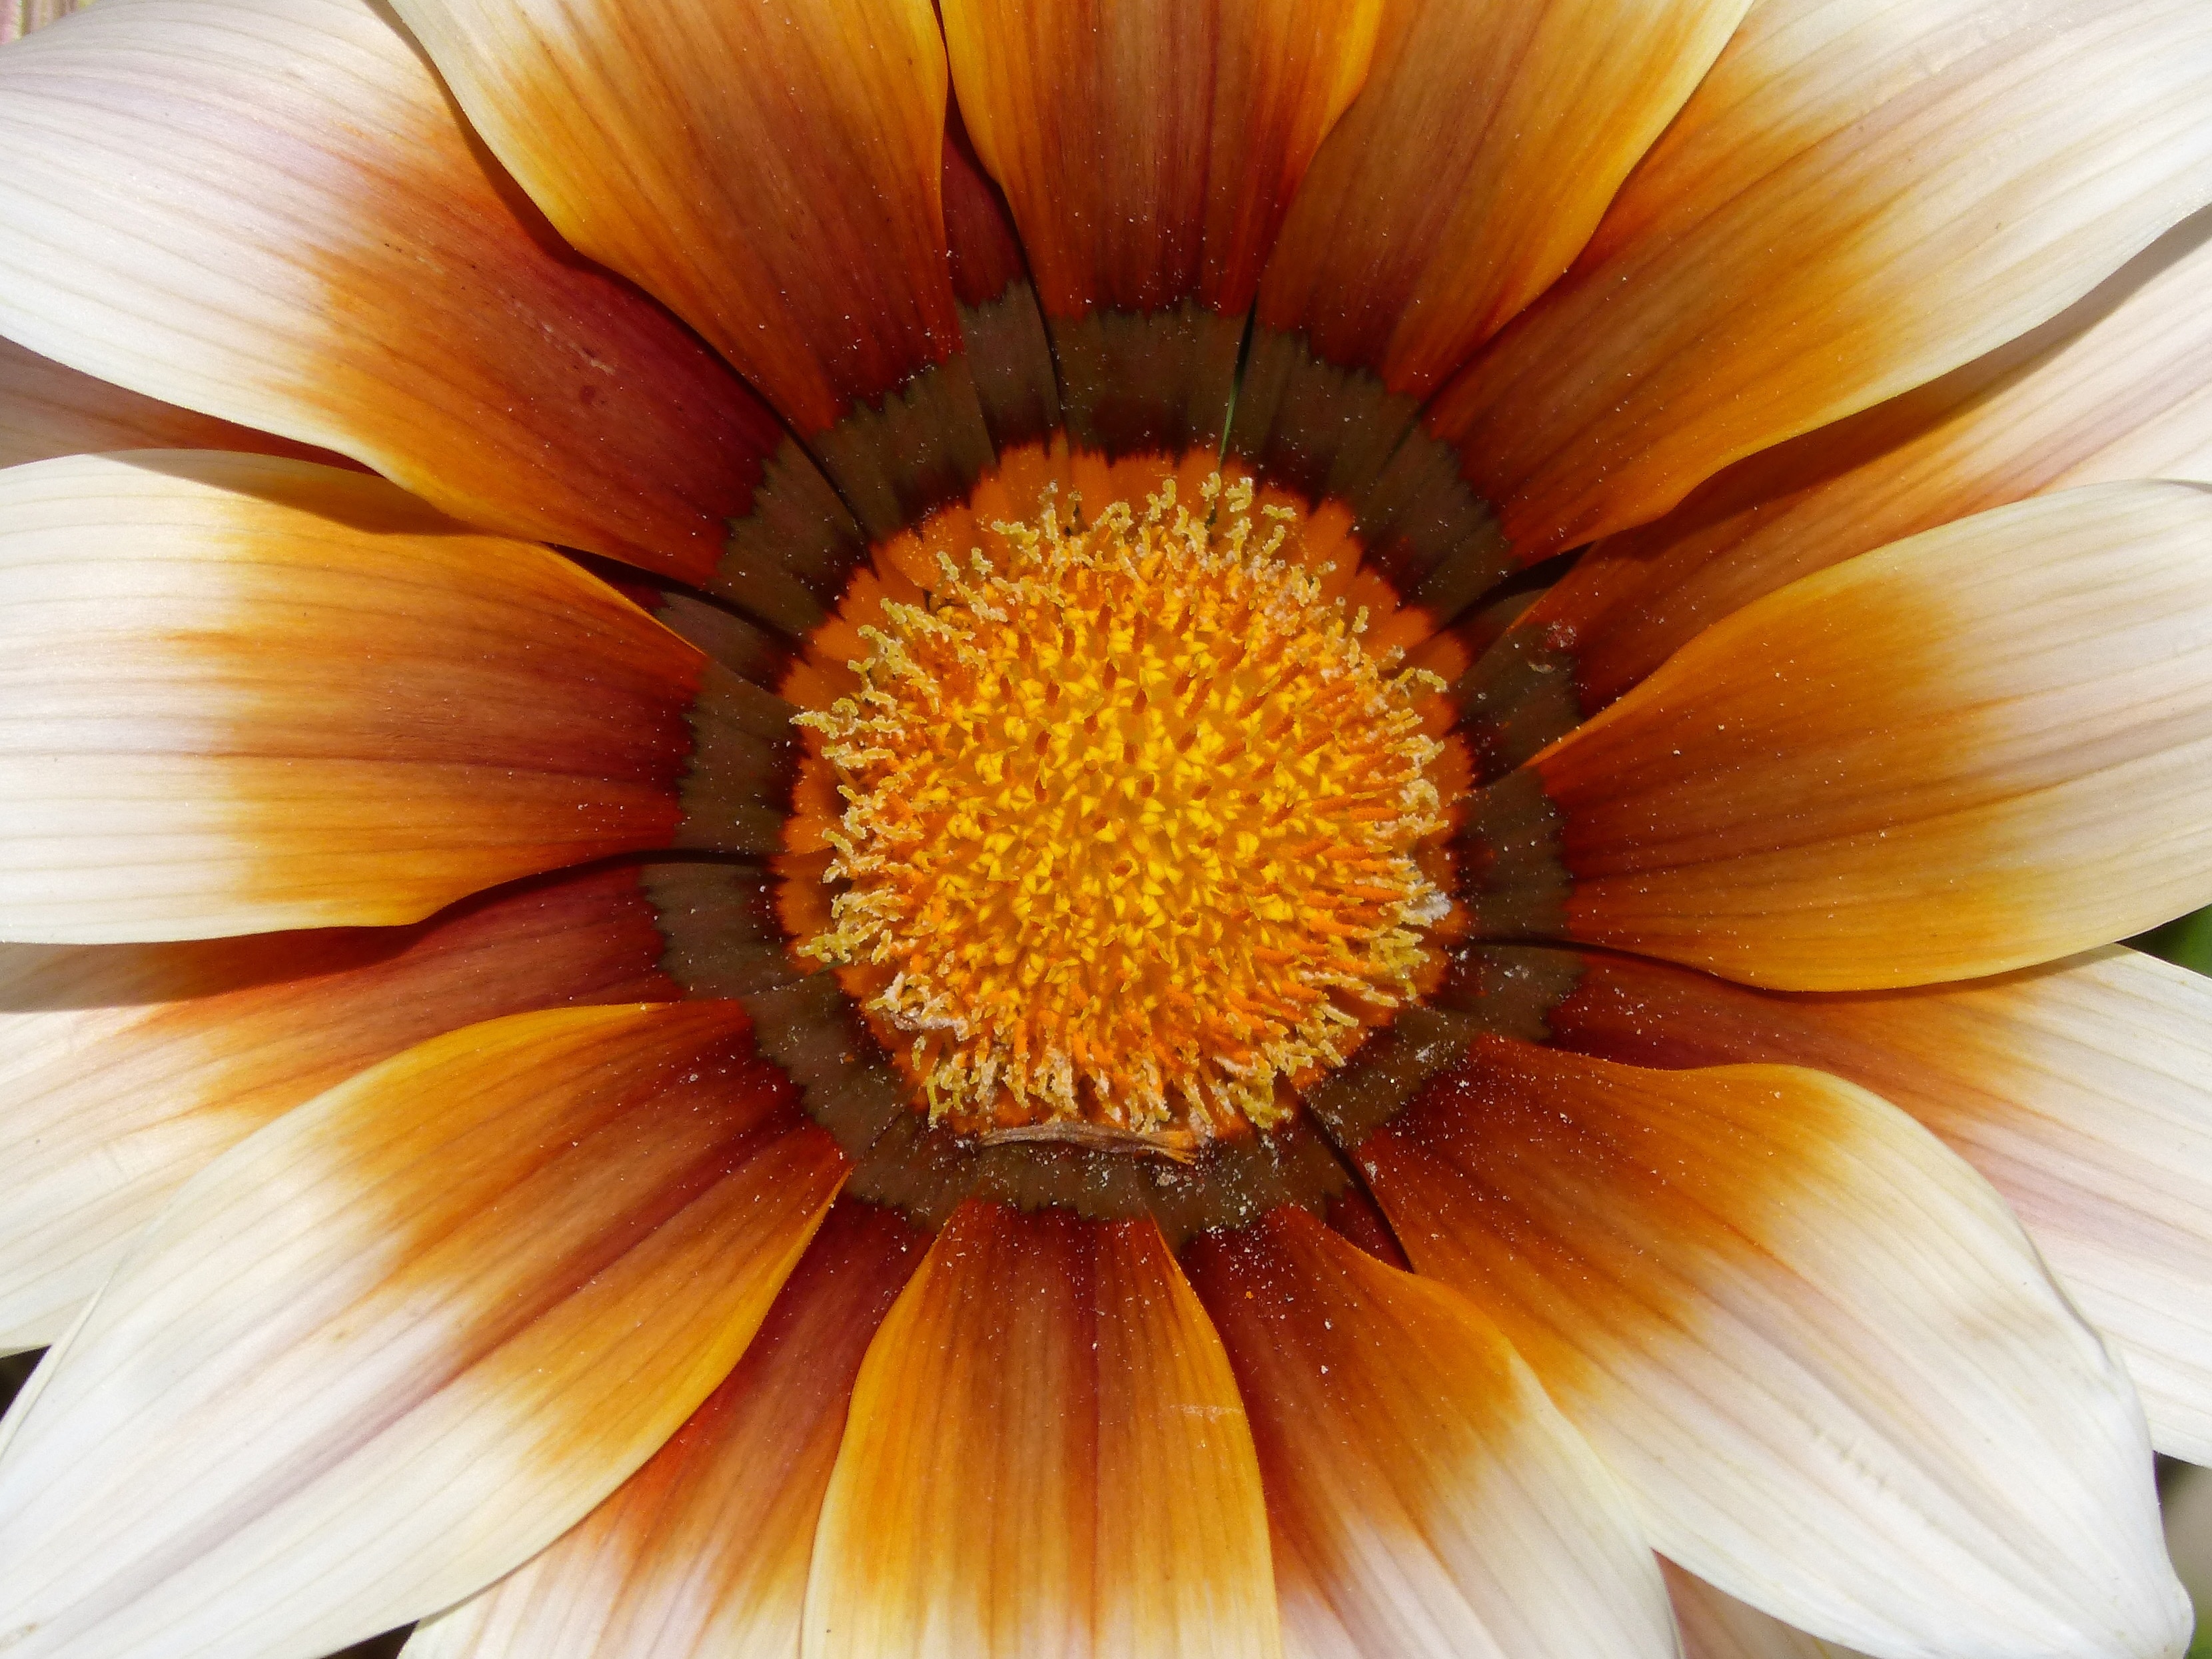 close up photo of orange petaled flower